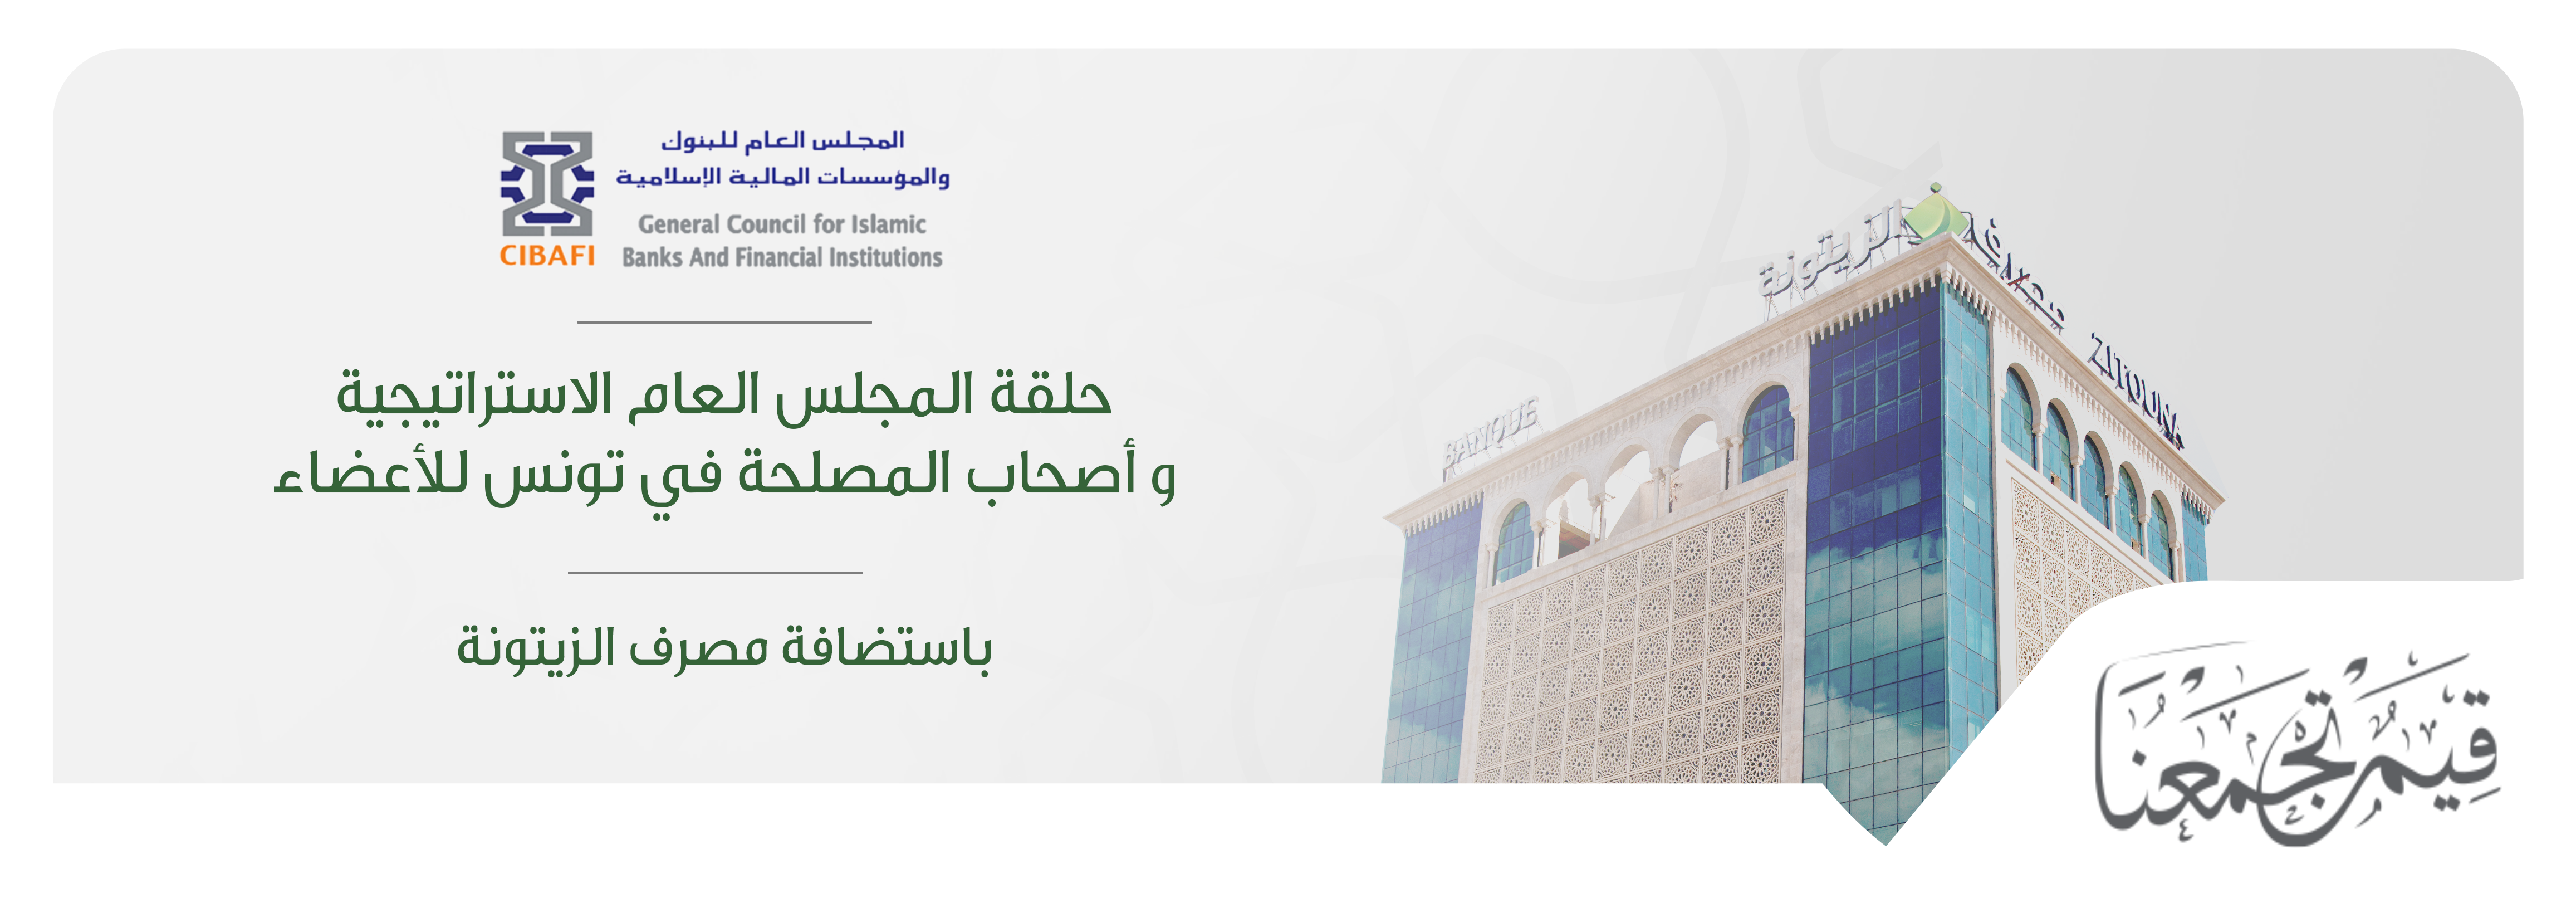 Le séminaire stratégique du Conseil Général des Banques et Institutions Financières Islamiques 